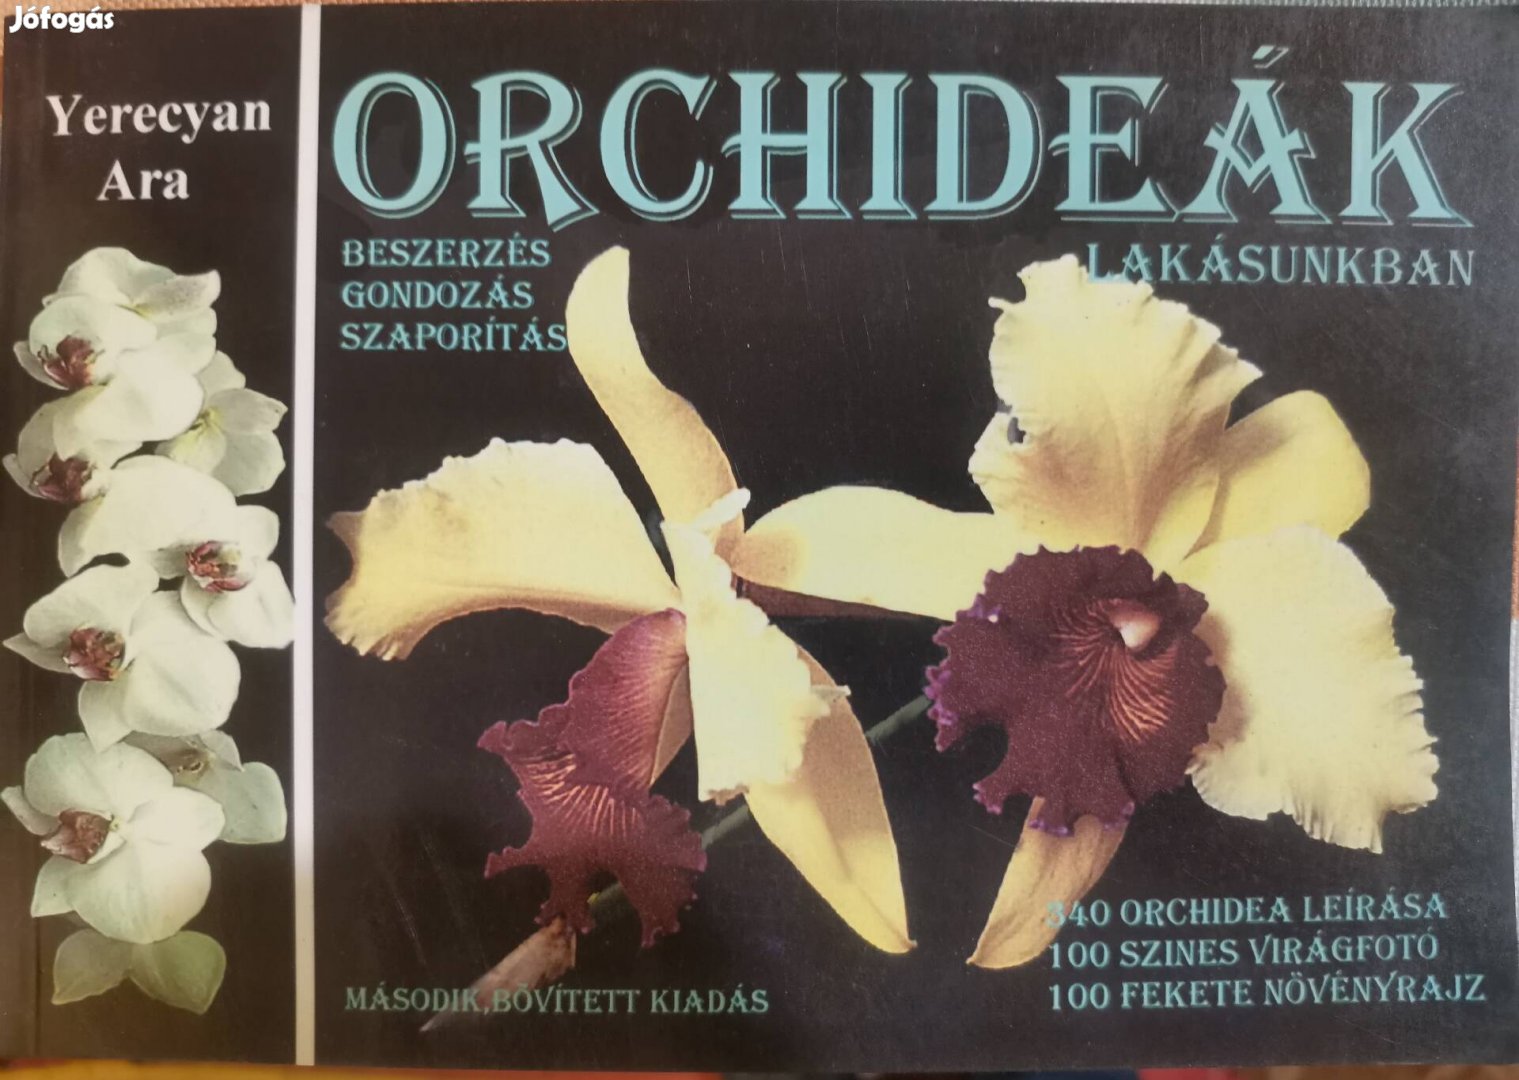 Yerecian Ara : Orchideák a lakásunkban